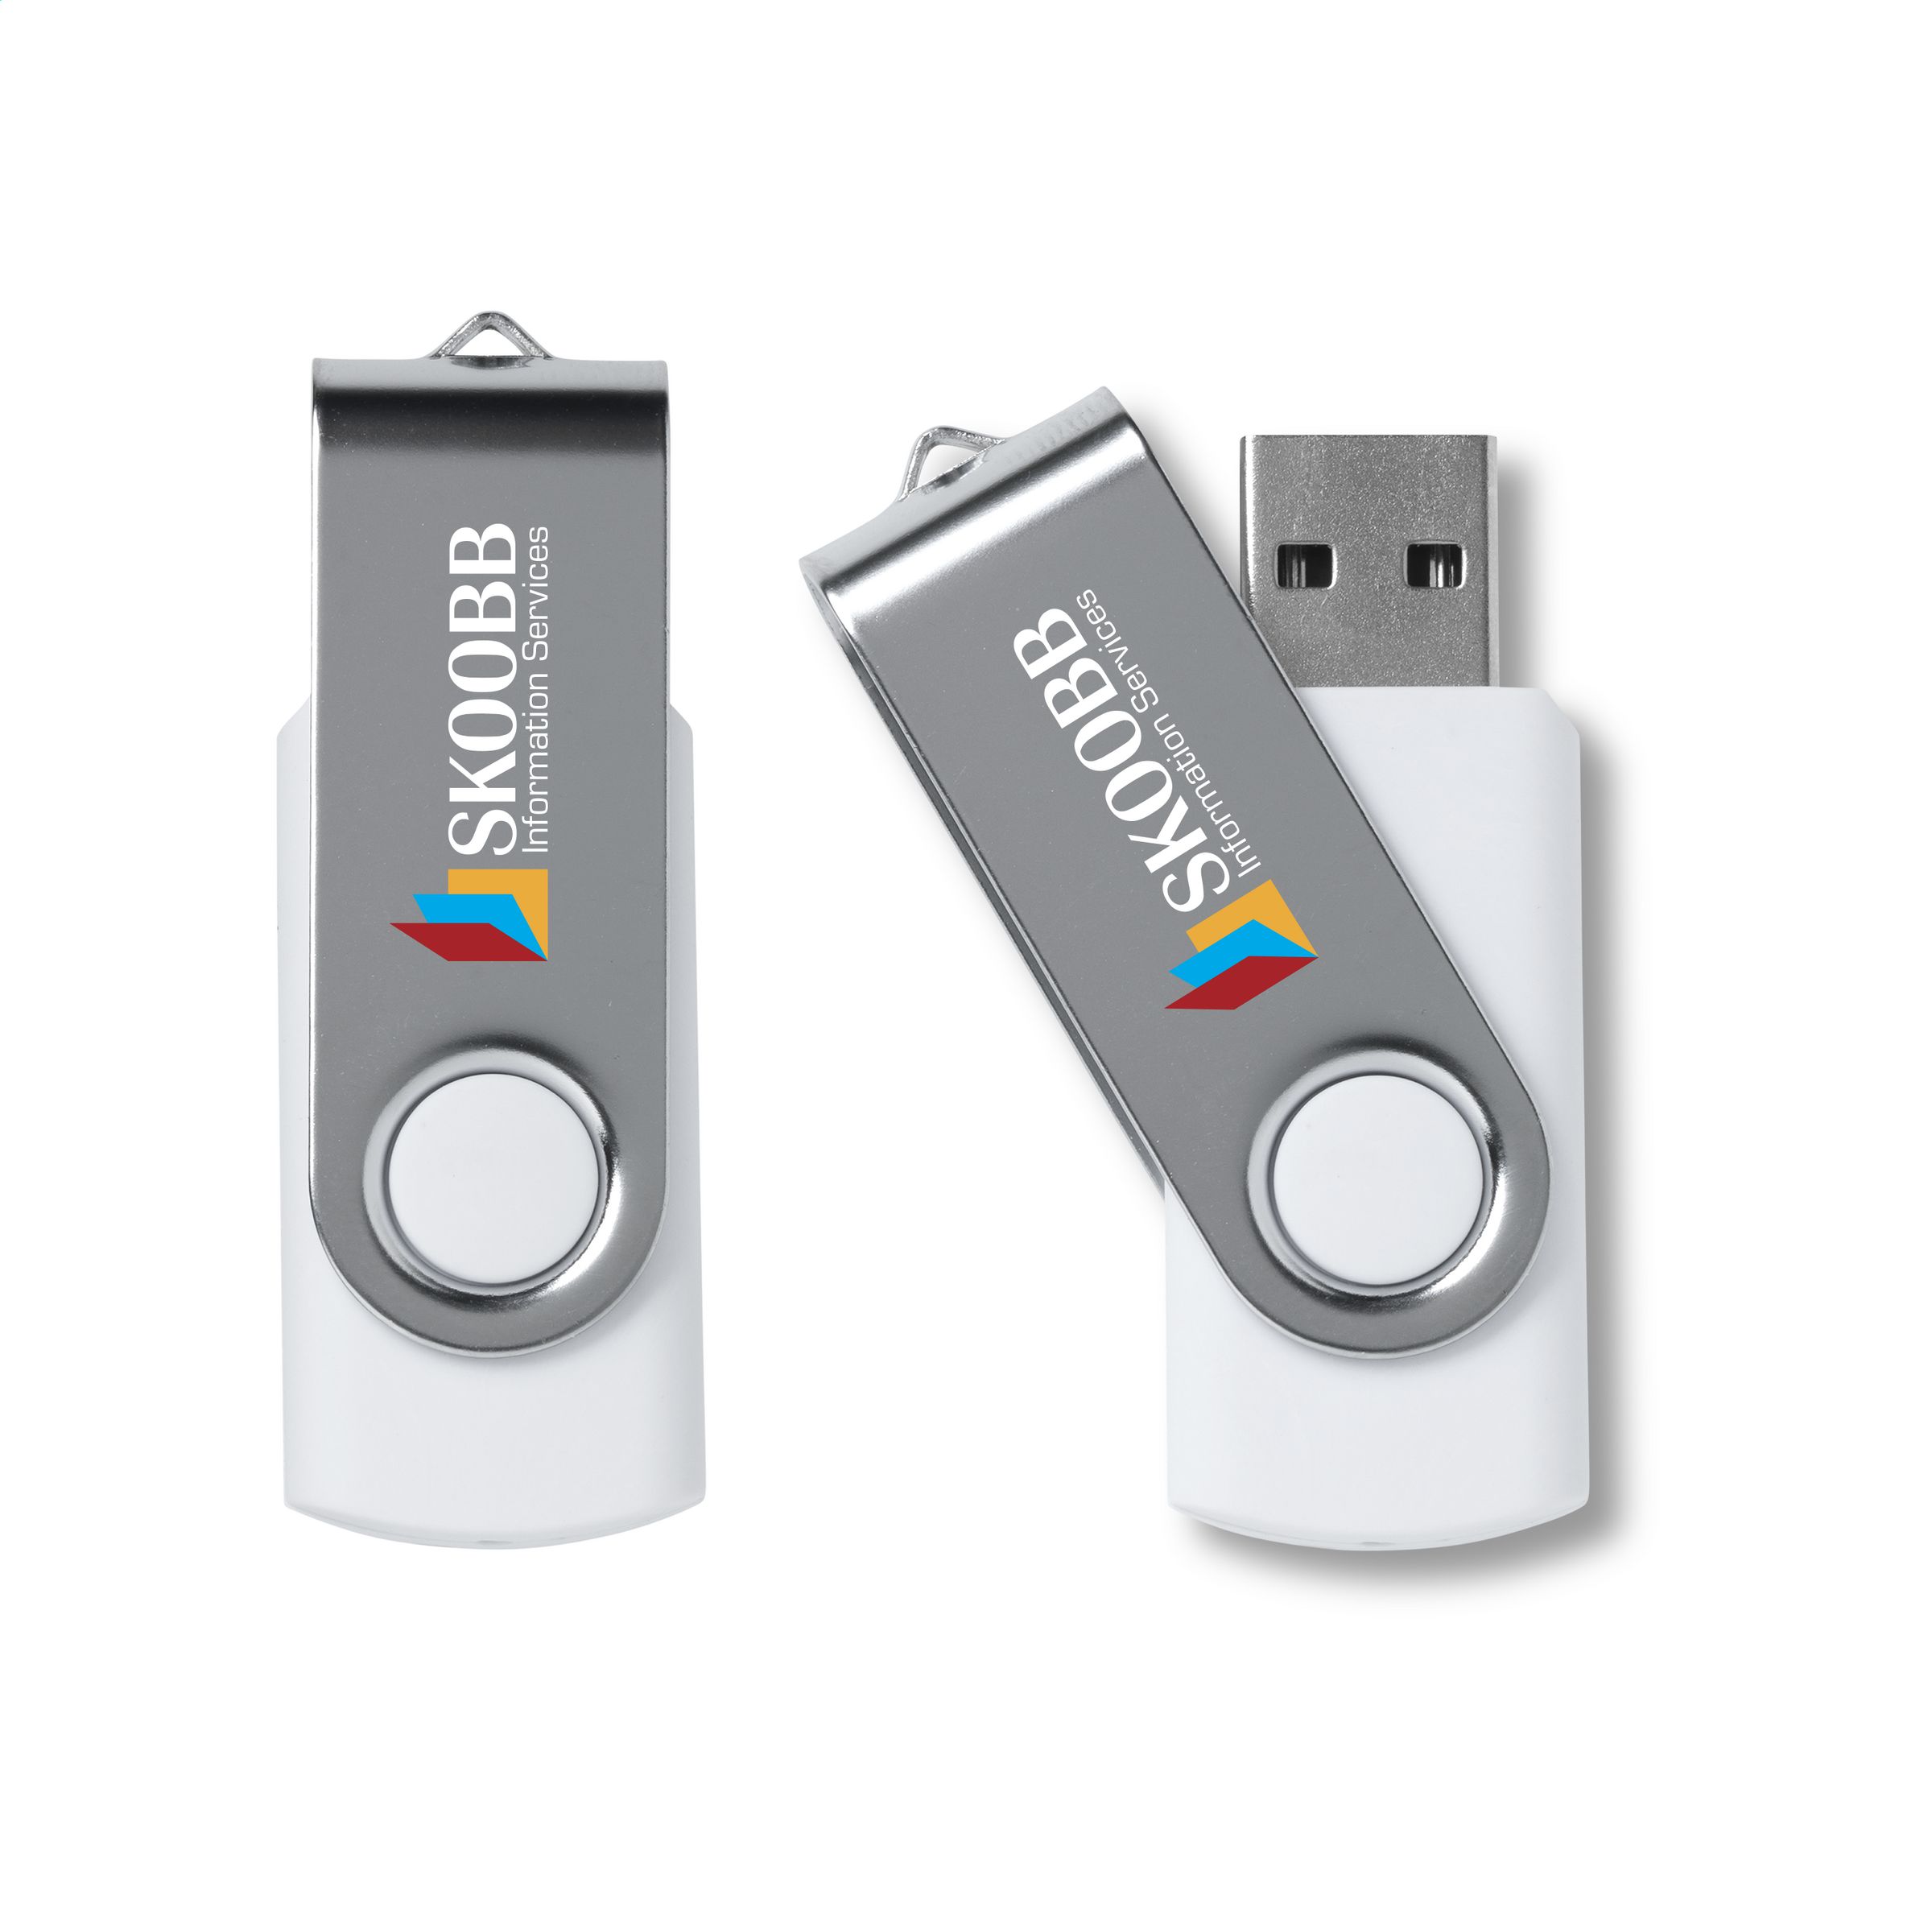 StorageMate USB 2.0 - Bad Aussee